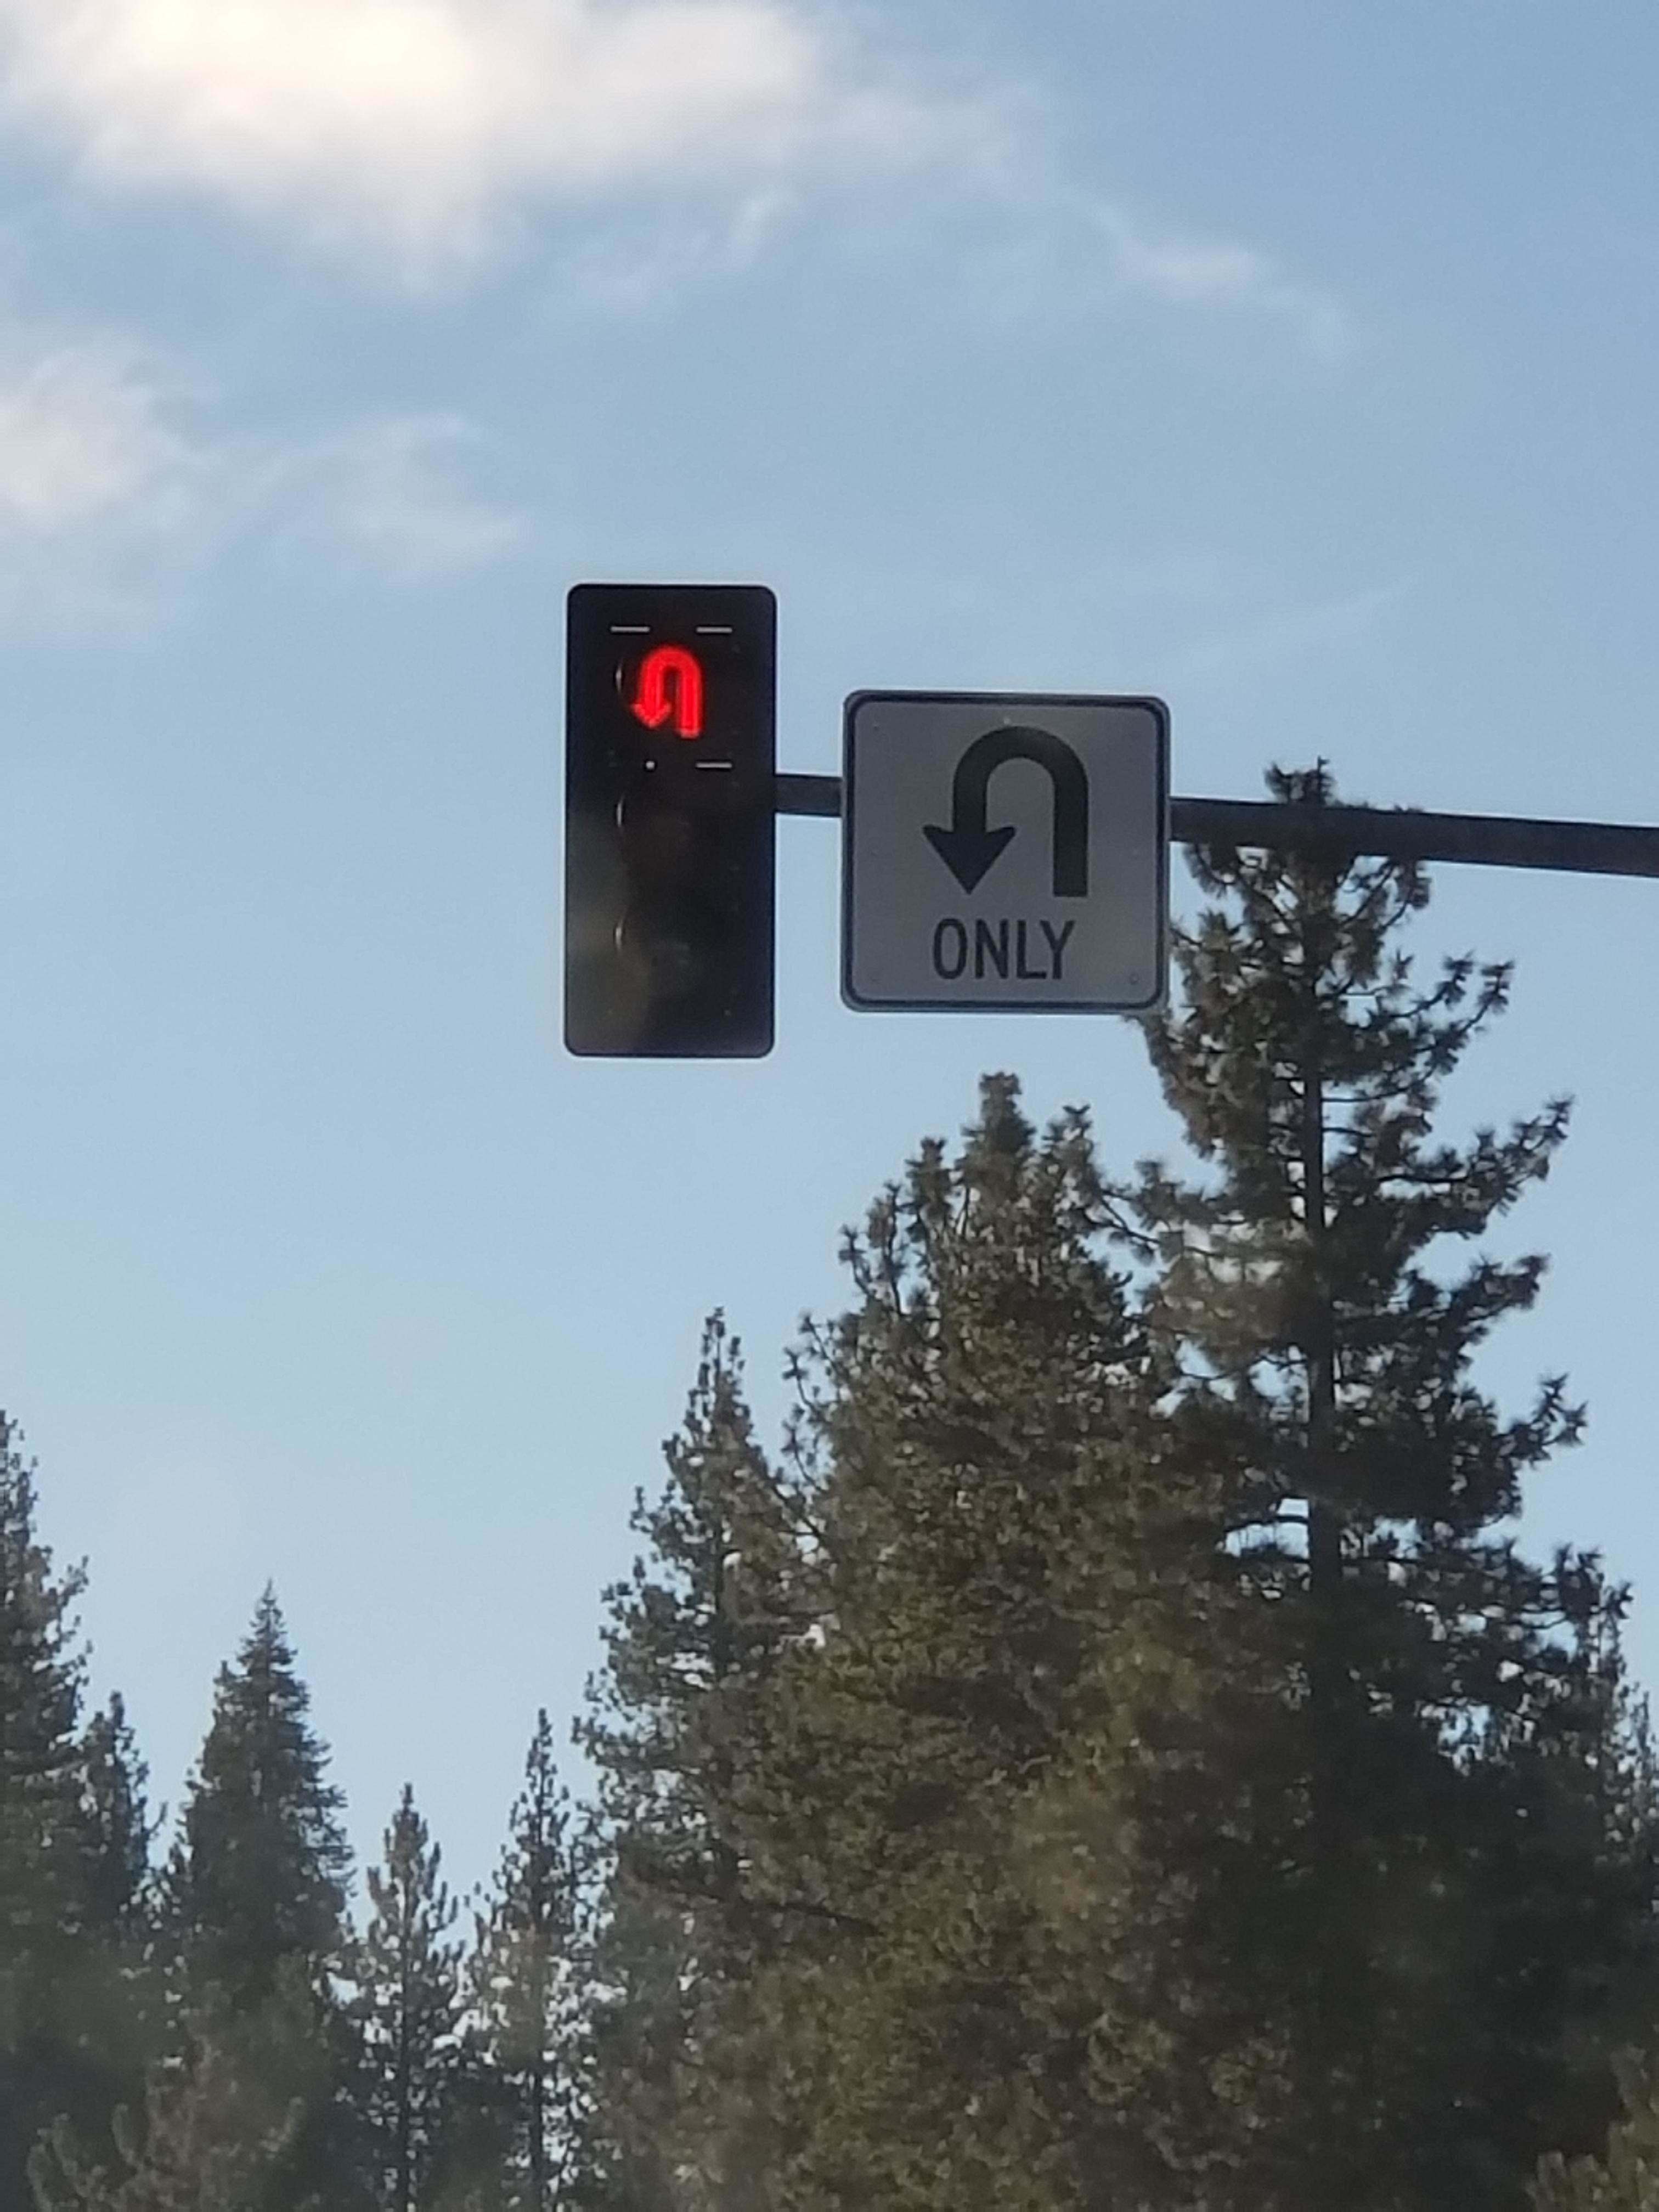 A red u-turn stoplight